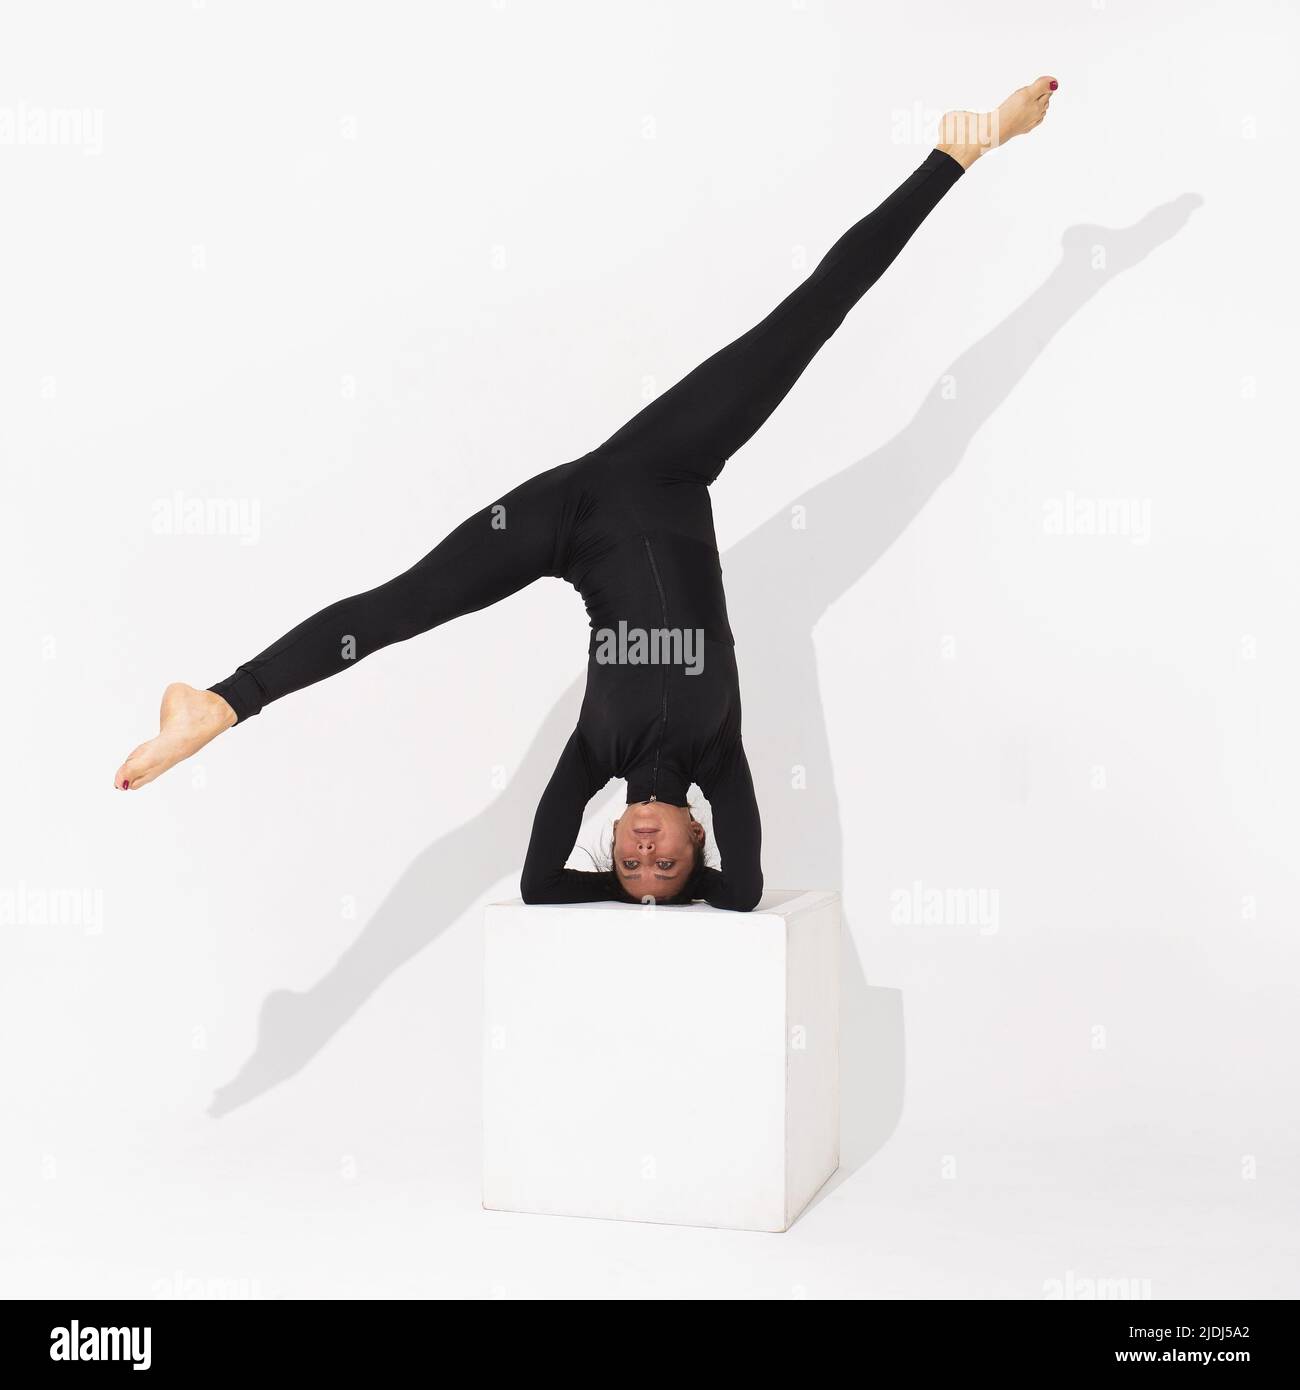 Una mujer en ropa deportiva negra practicando yoga realiza el ejercicio Salamba Shirshasana, la postura asana invertida o el cabecero, se coloca sobre un cubo en una b blanca Foto de stock